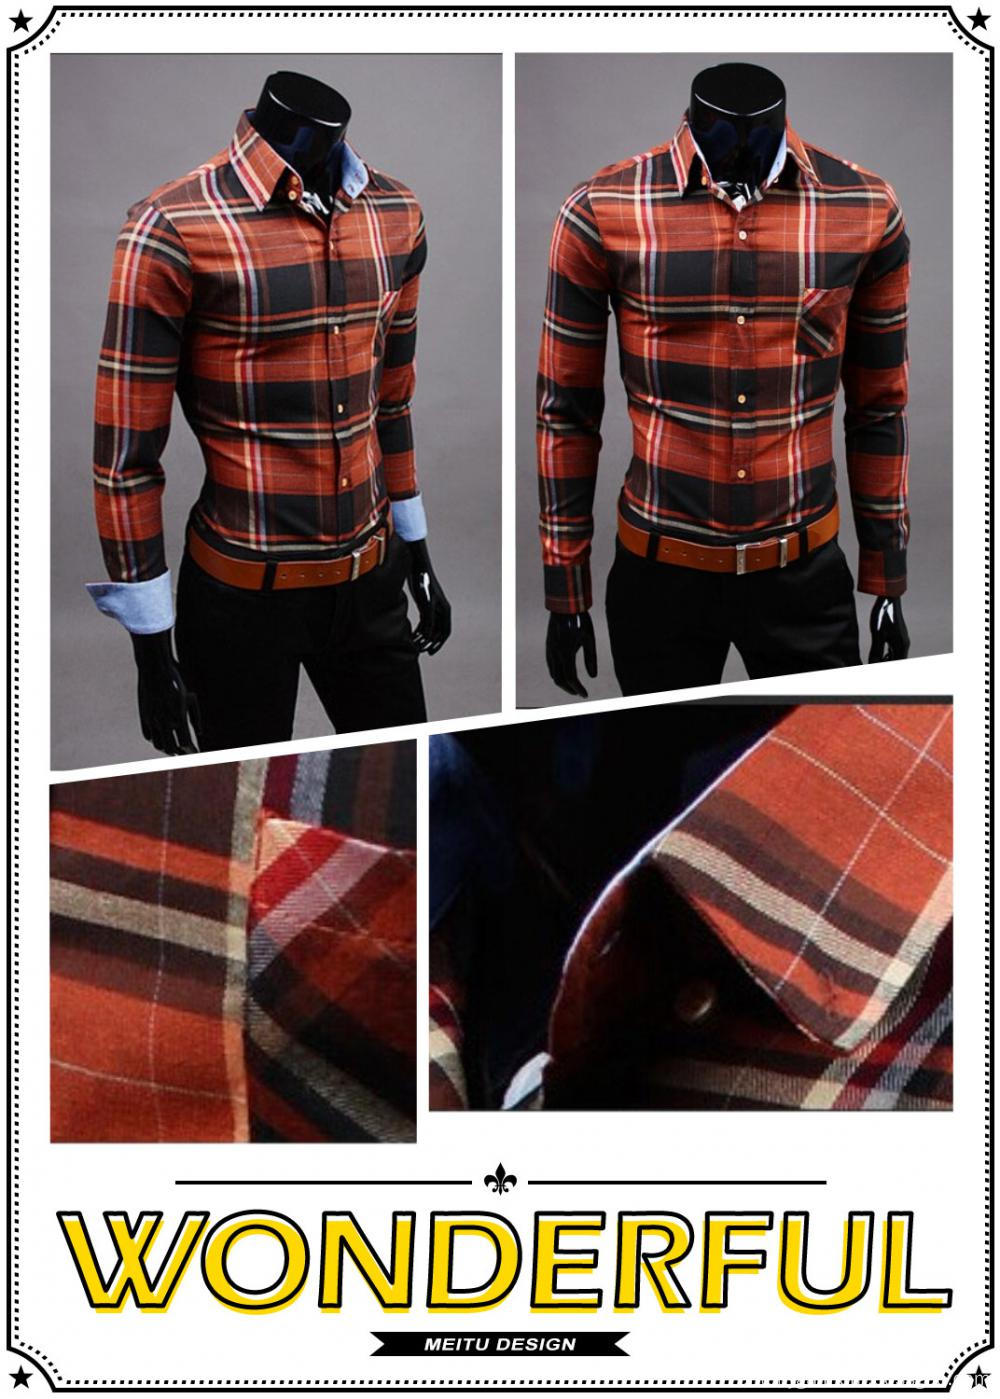 Men's trim style long sleeve cotton flannel shirt